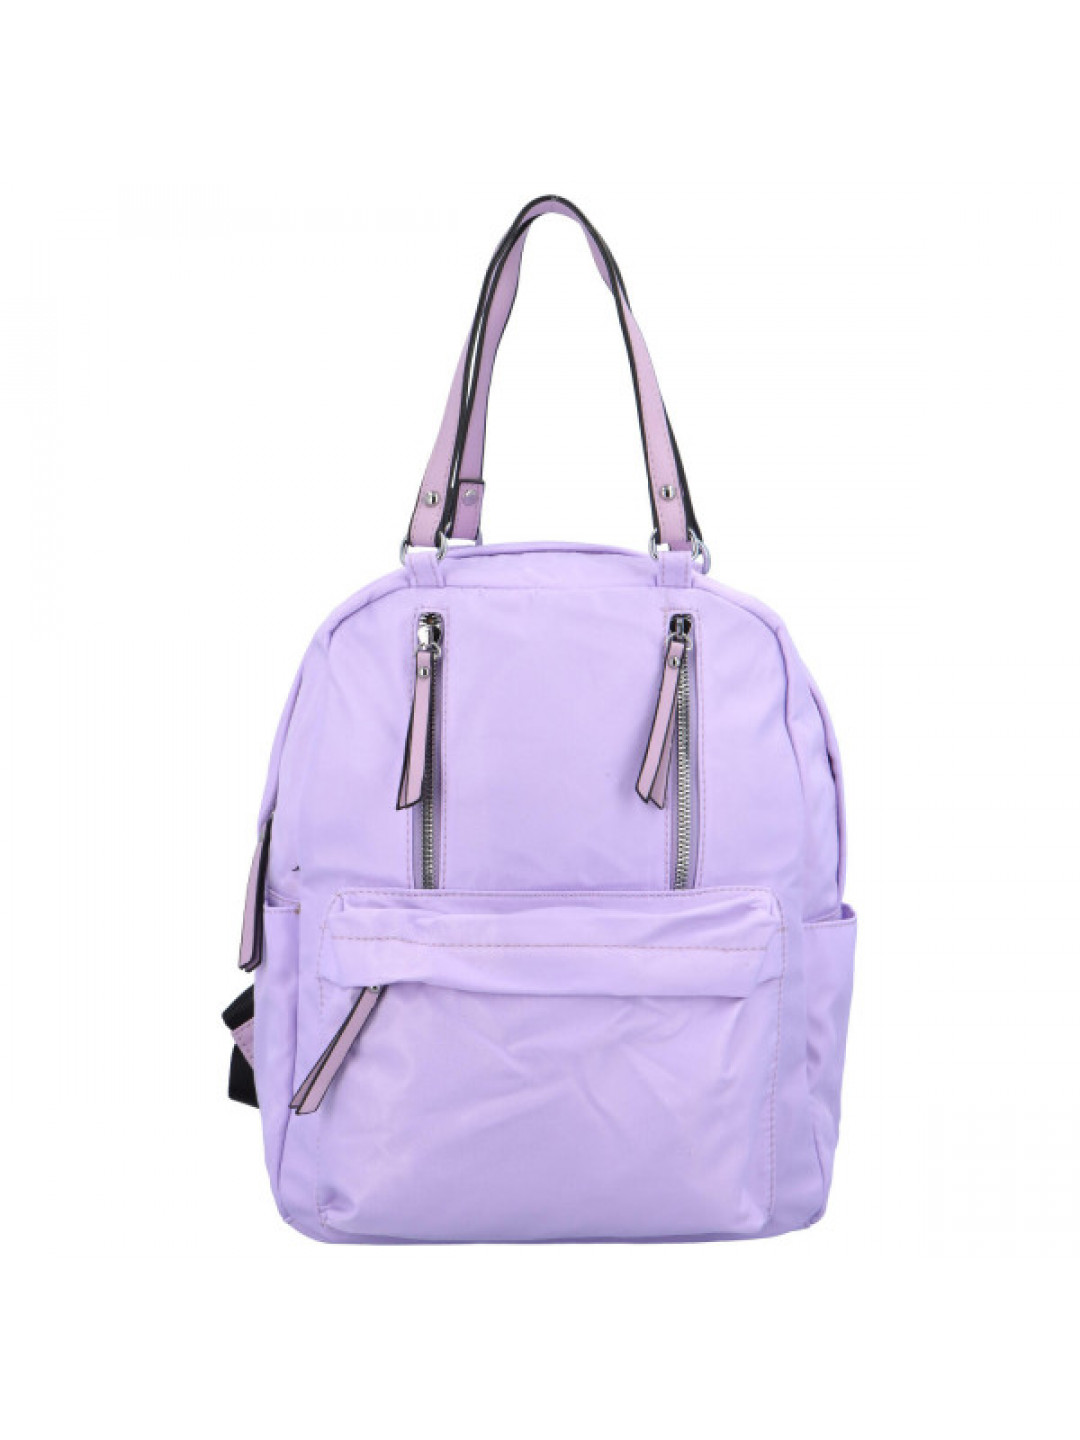 Moderní dámský látkový kabelko batoh Anita světle fialová